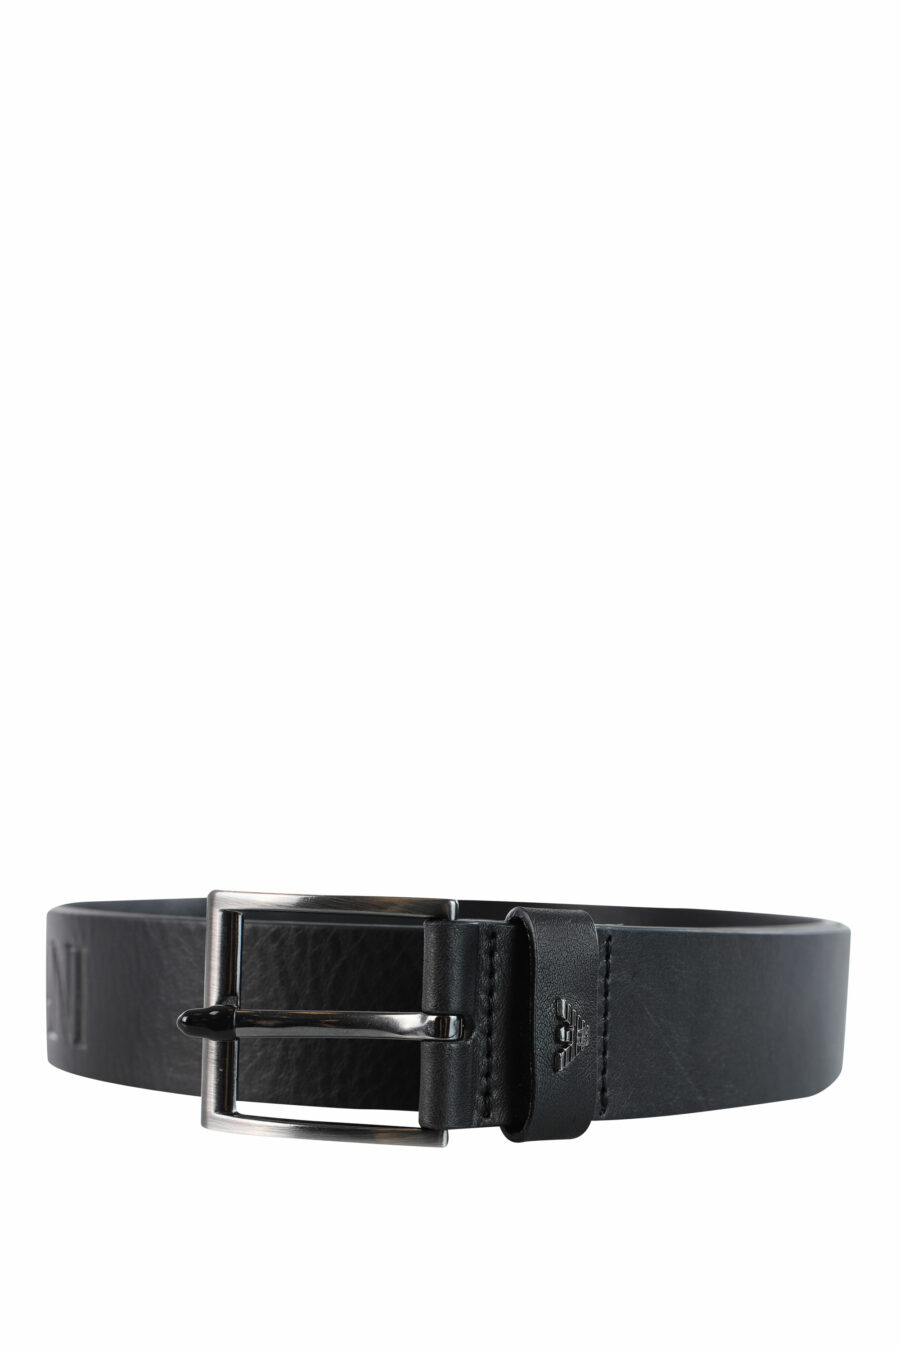 Black belt with logo - IMG 3727